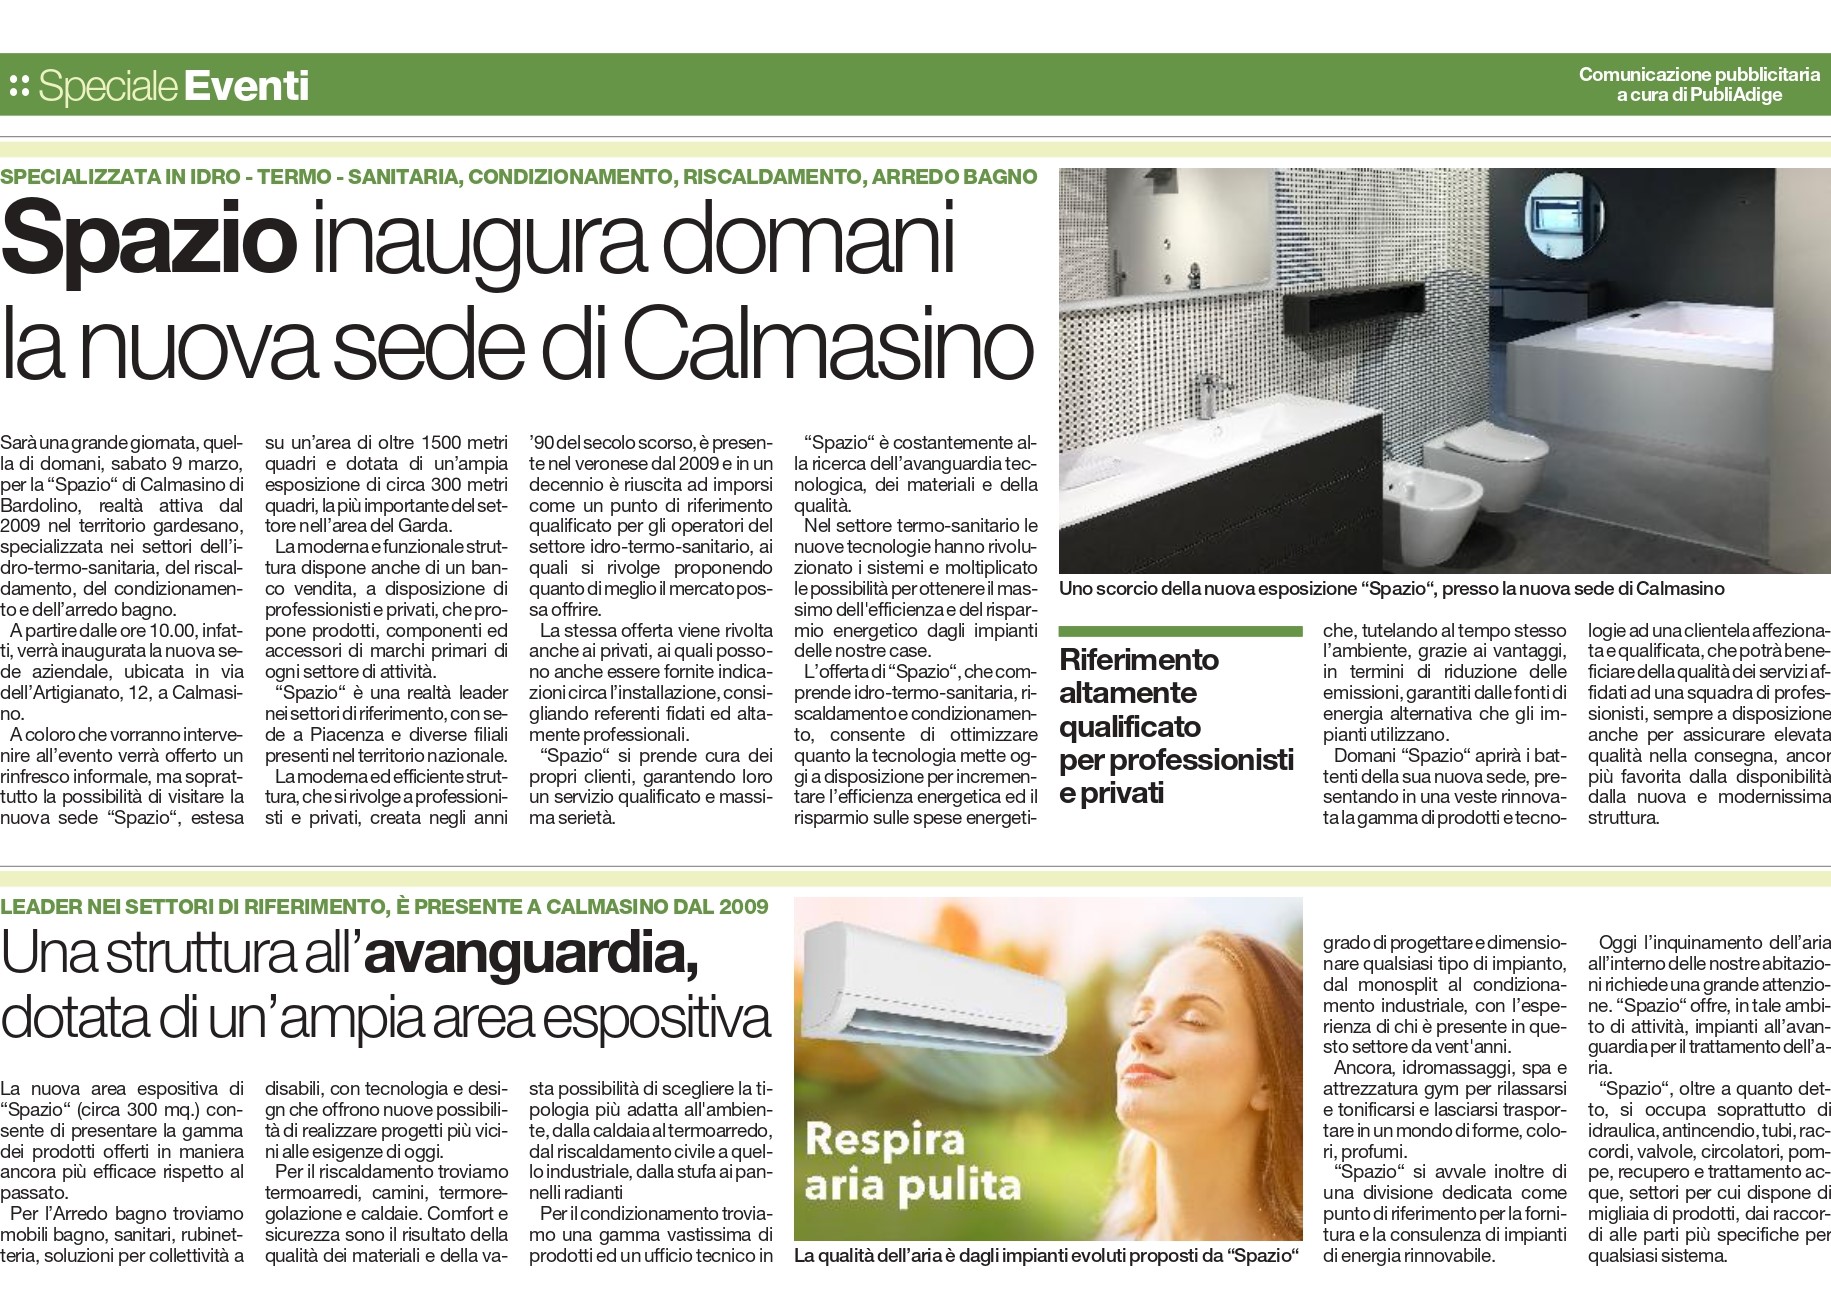 Inaugurazione nuova sede a Calmasino (VR)